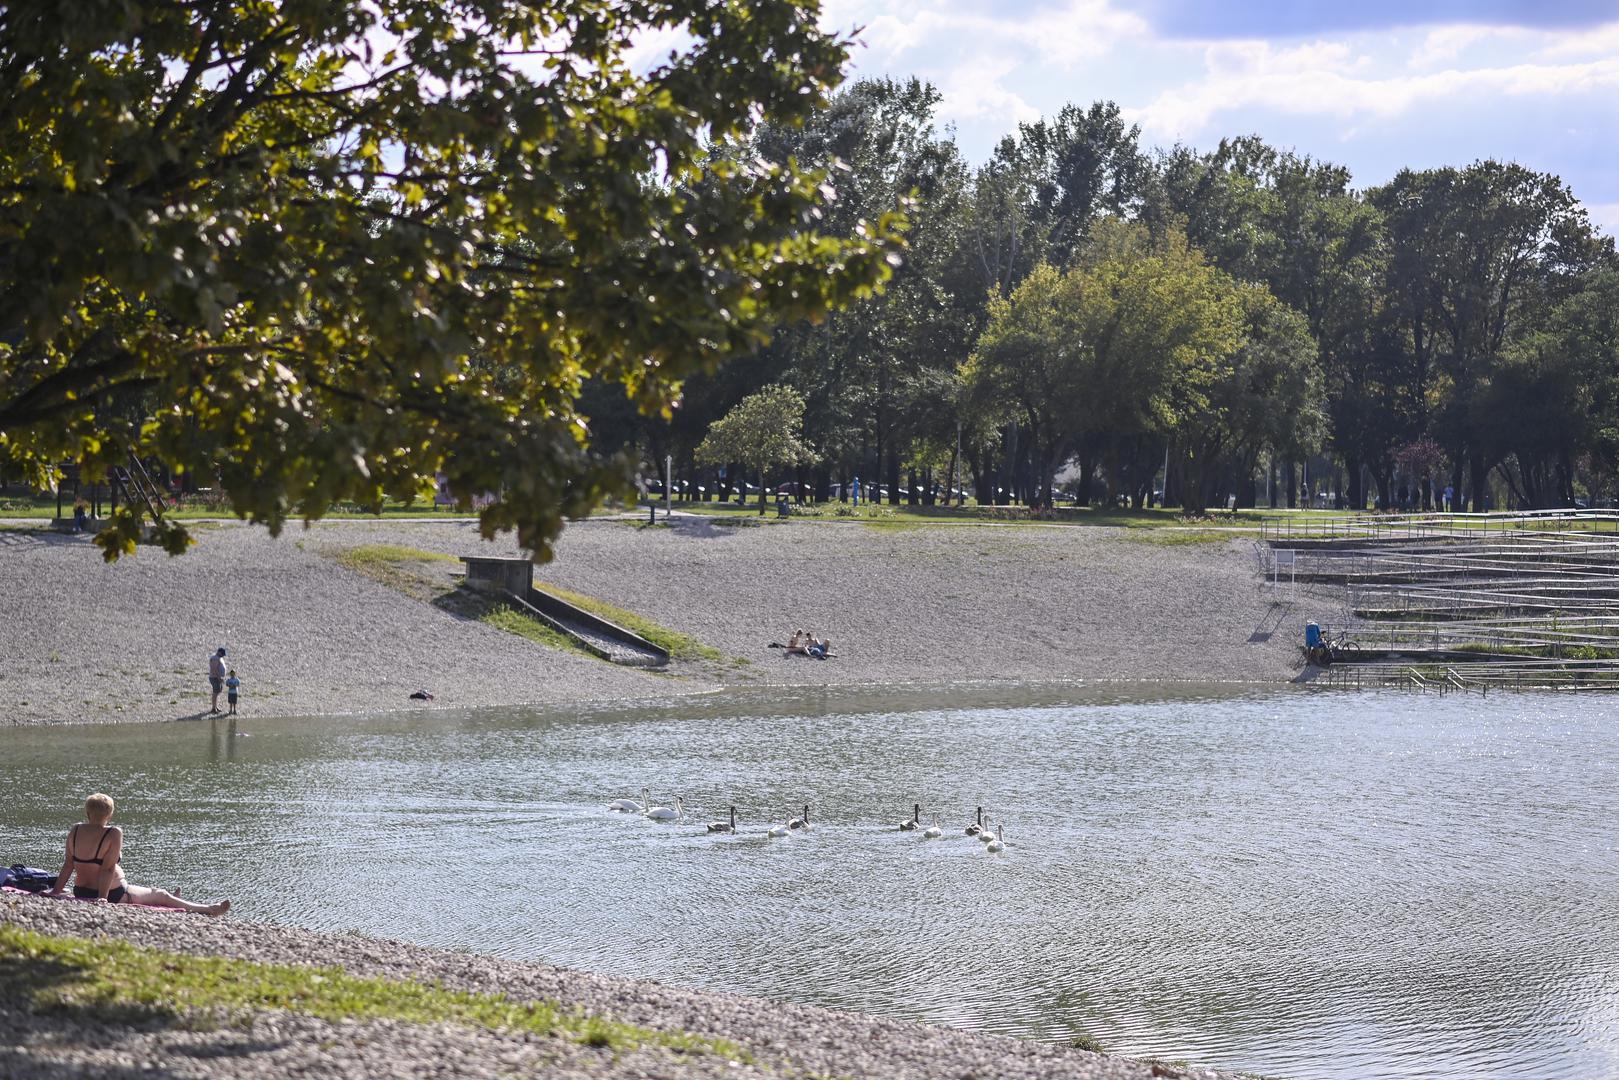 Bundek: Neposredno kod mosta u Novom Zagrebu nalazi se još jedno umjetno jezero – Bundek.  Osim jezera, tu su i biciklističke staze, šetalište i parkovi. Djeca se mogu igrati, a tu su i roštilji koje možete koristiti za zabave na otvorenom. Oko jezera postoje i kafići u kojima možete popiti piće ili pojesti sladoled. 